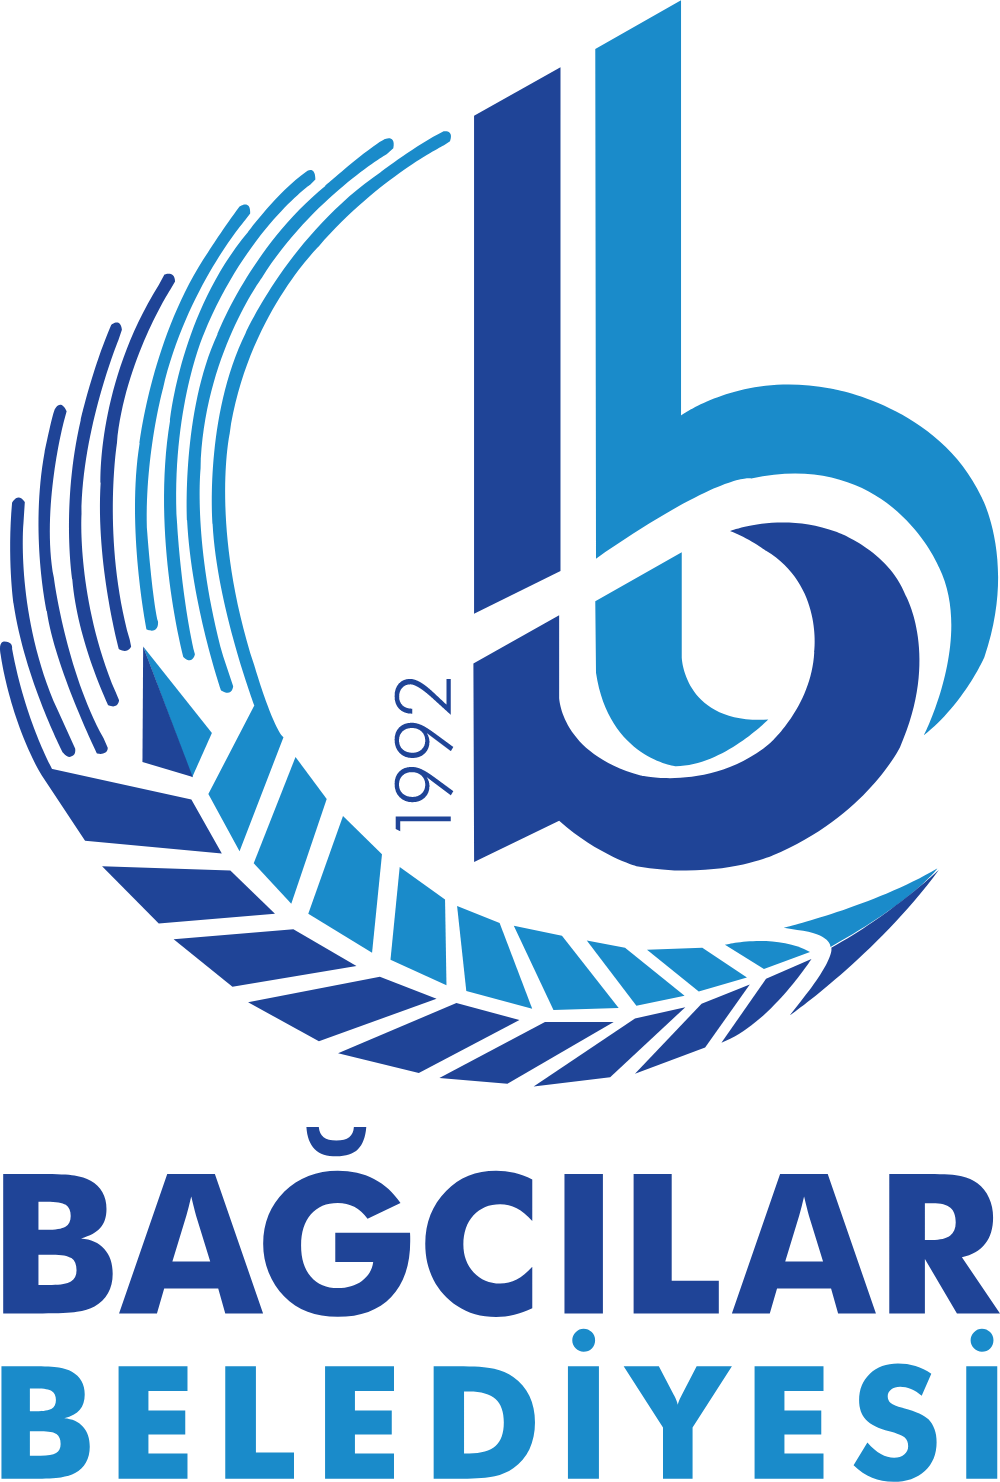 Bagcilar Belediyesi Logo Logos